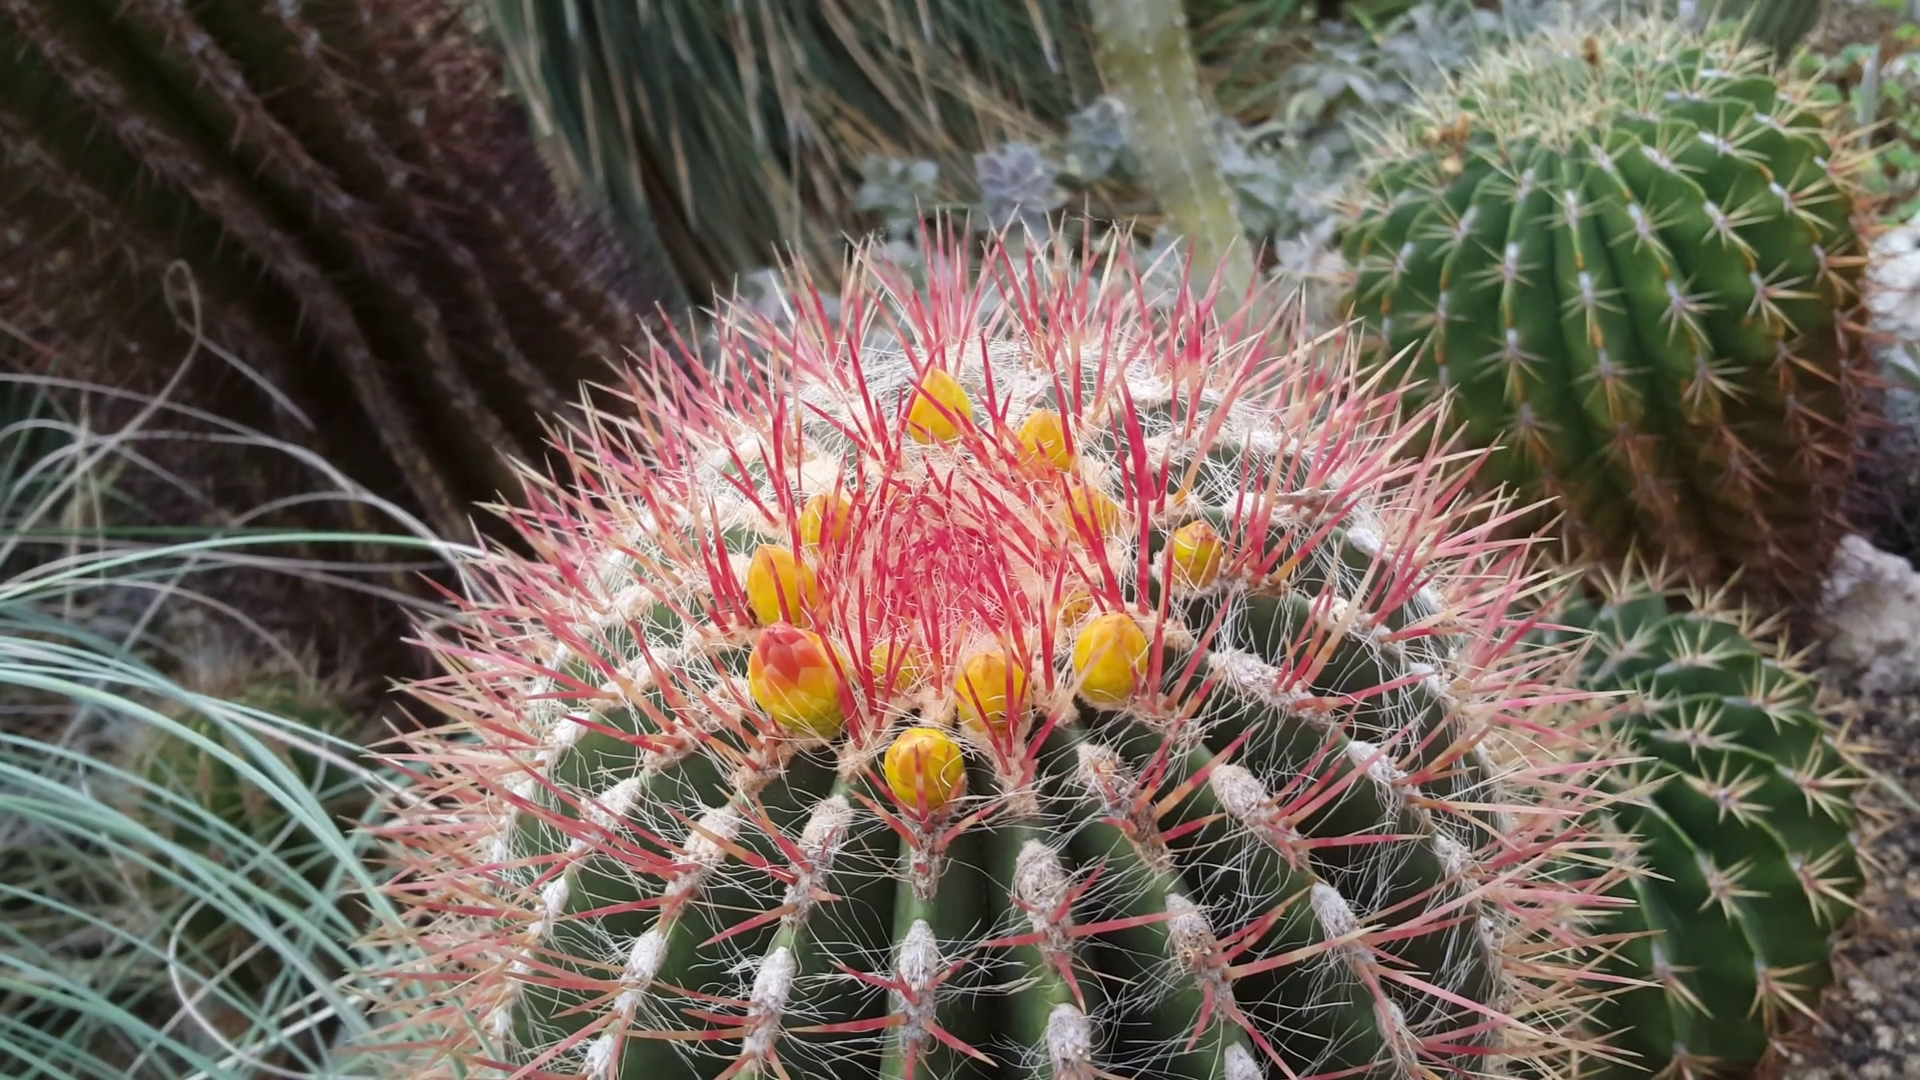 Thorny cactus photo